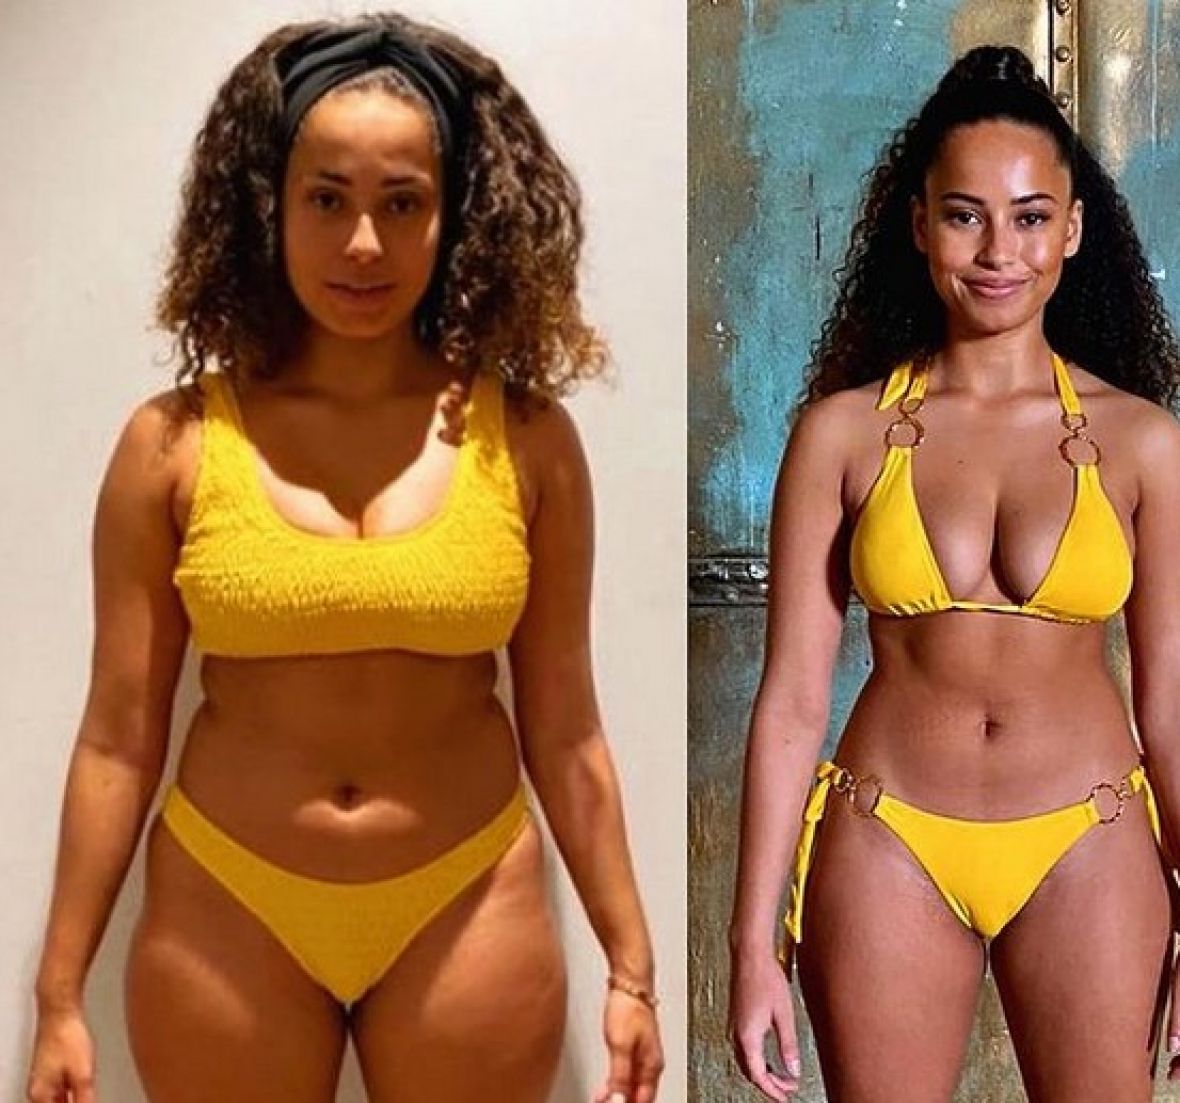 Foto: Instagram/Fotografija prije i poslije 